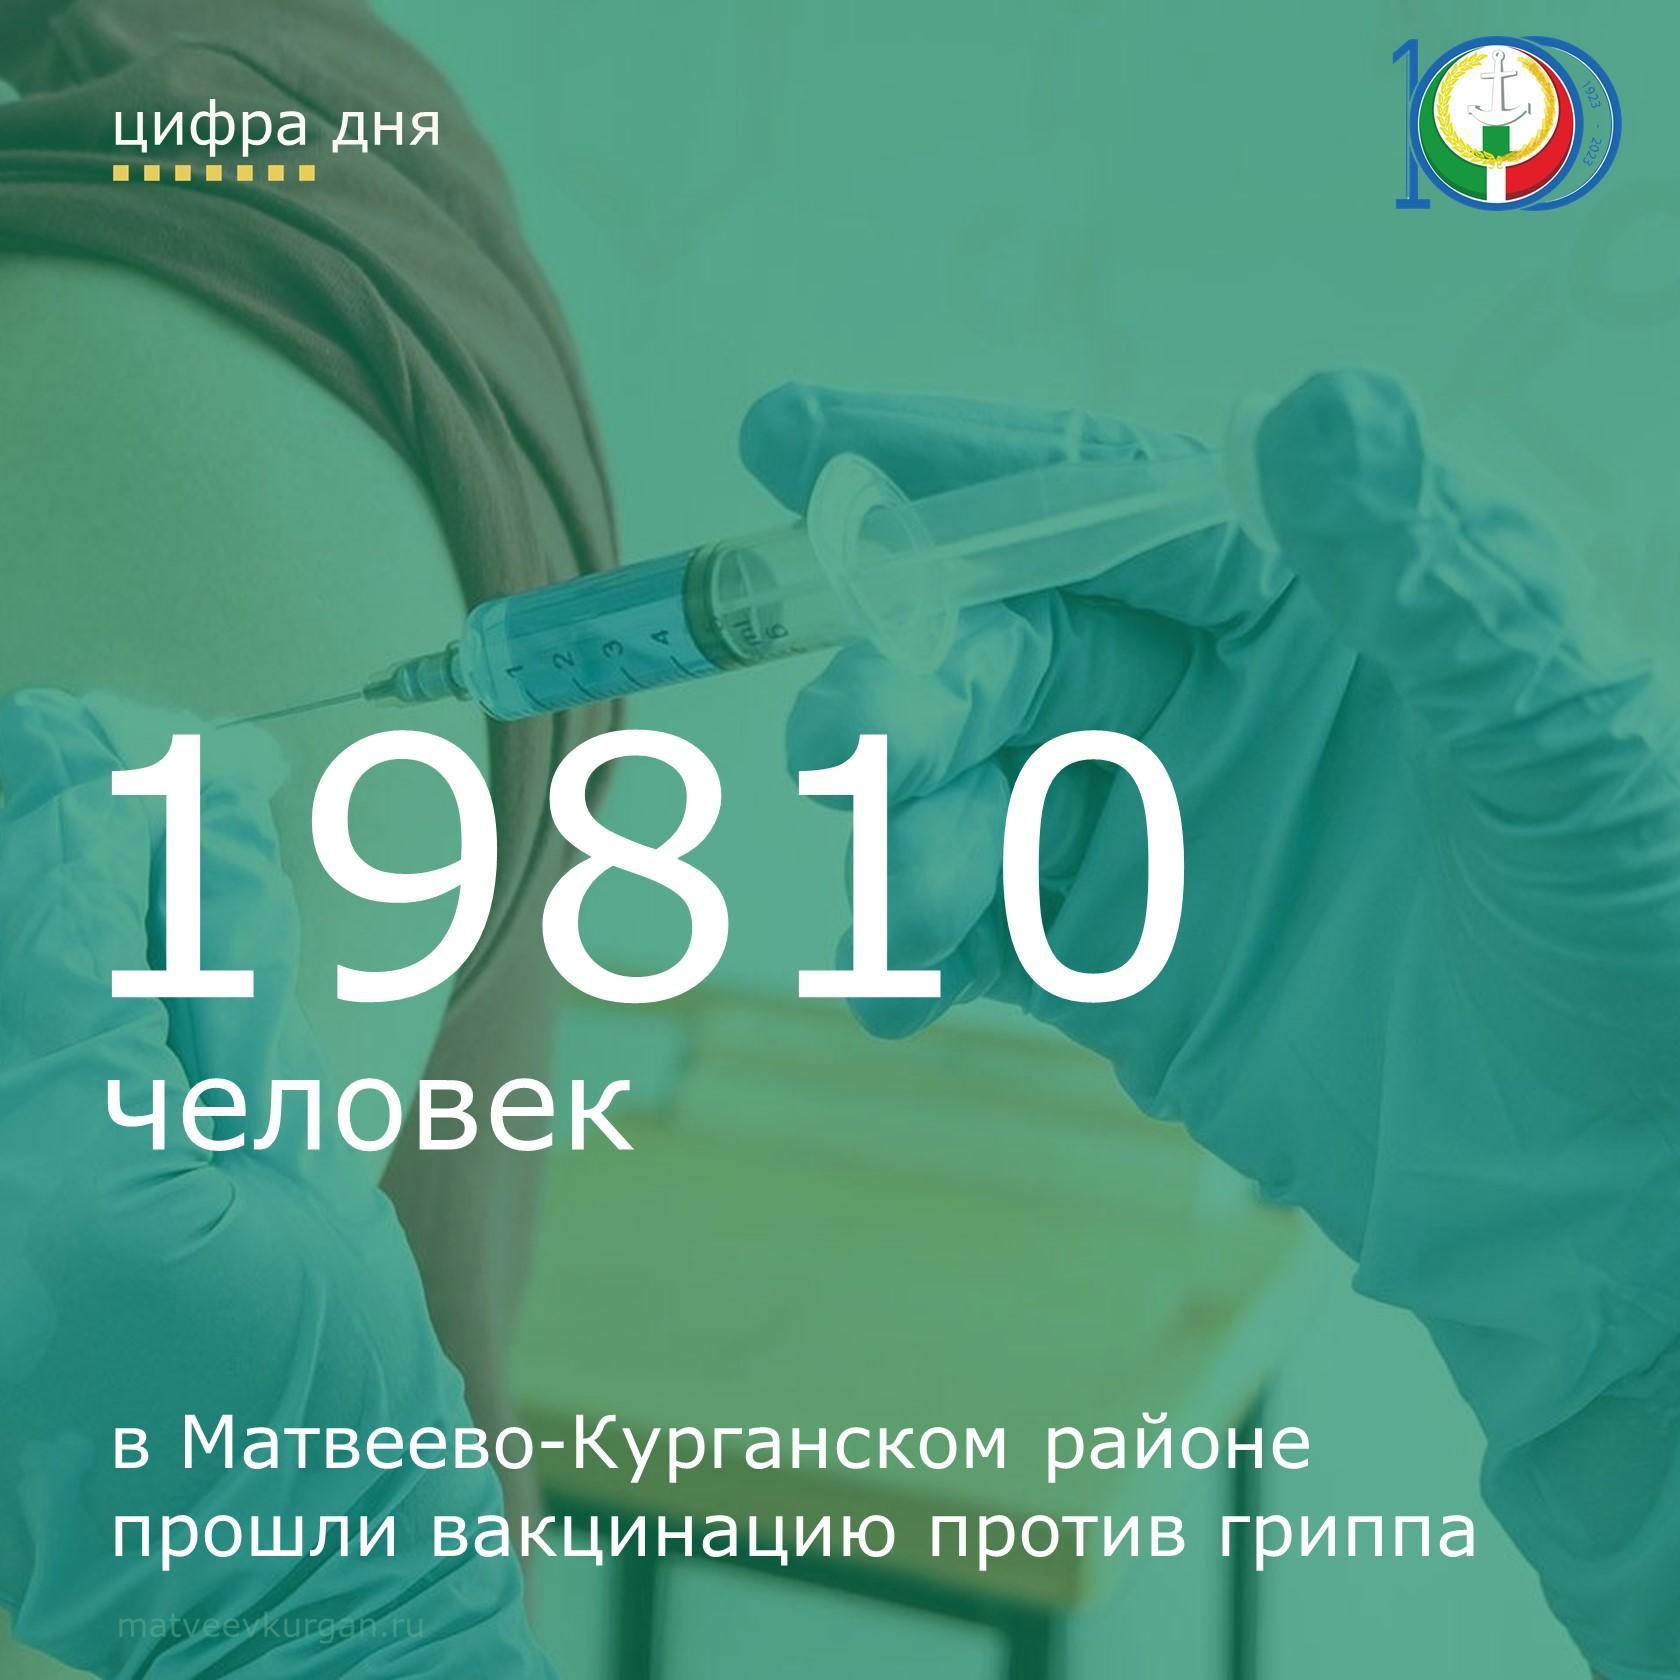 19810 Матвеево-Курганцев привились от гриппа